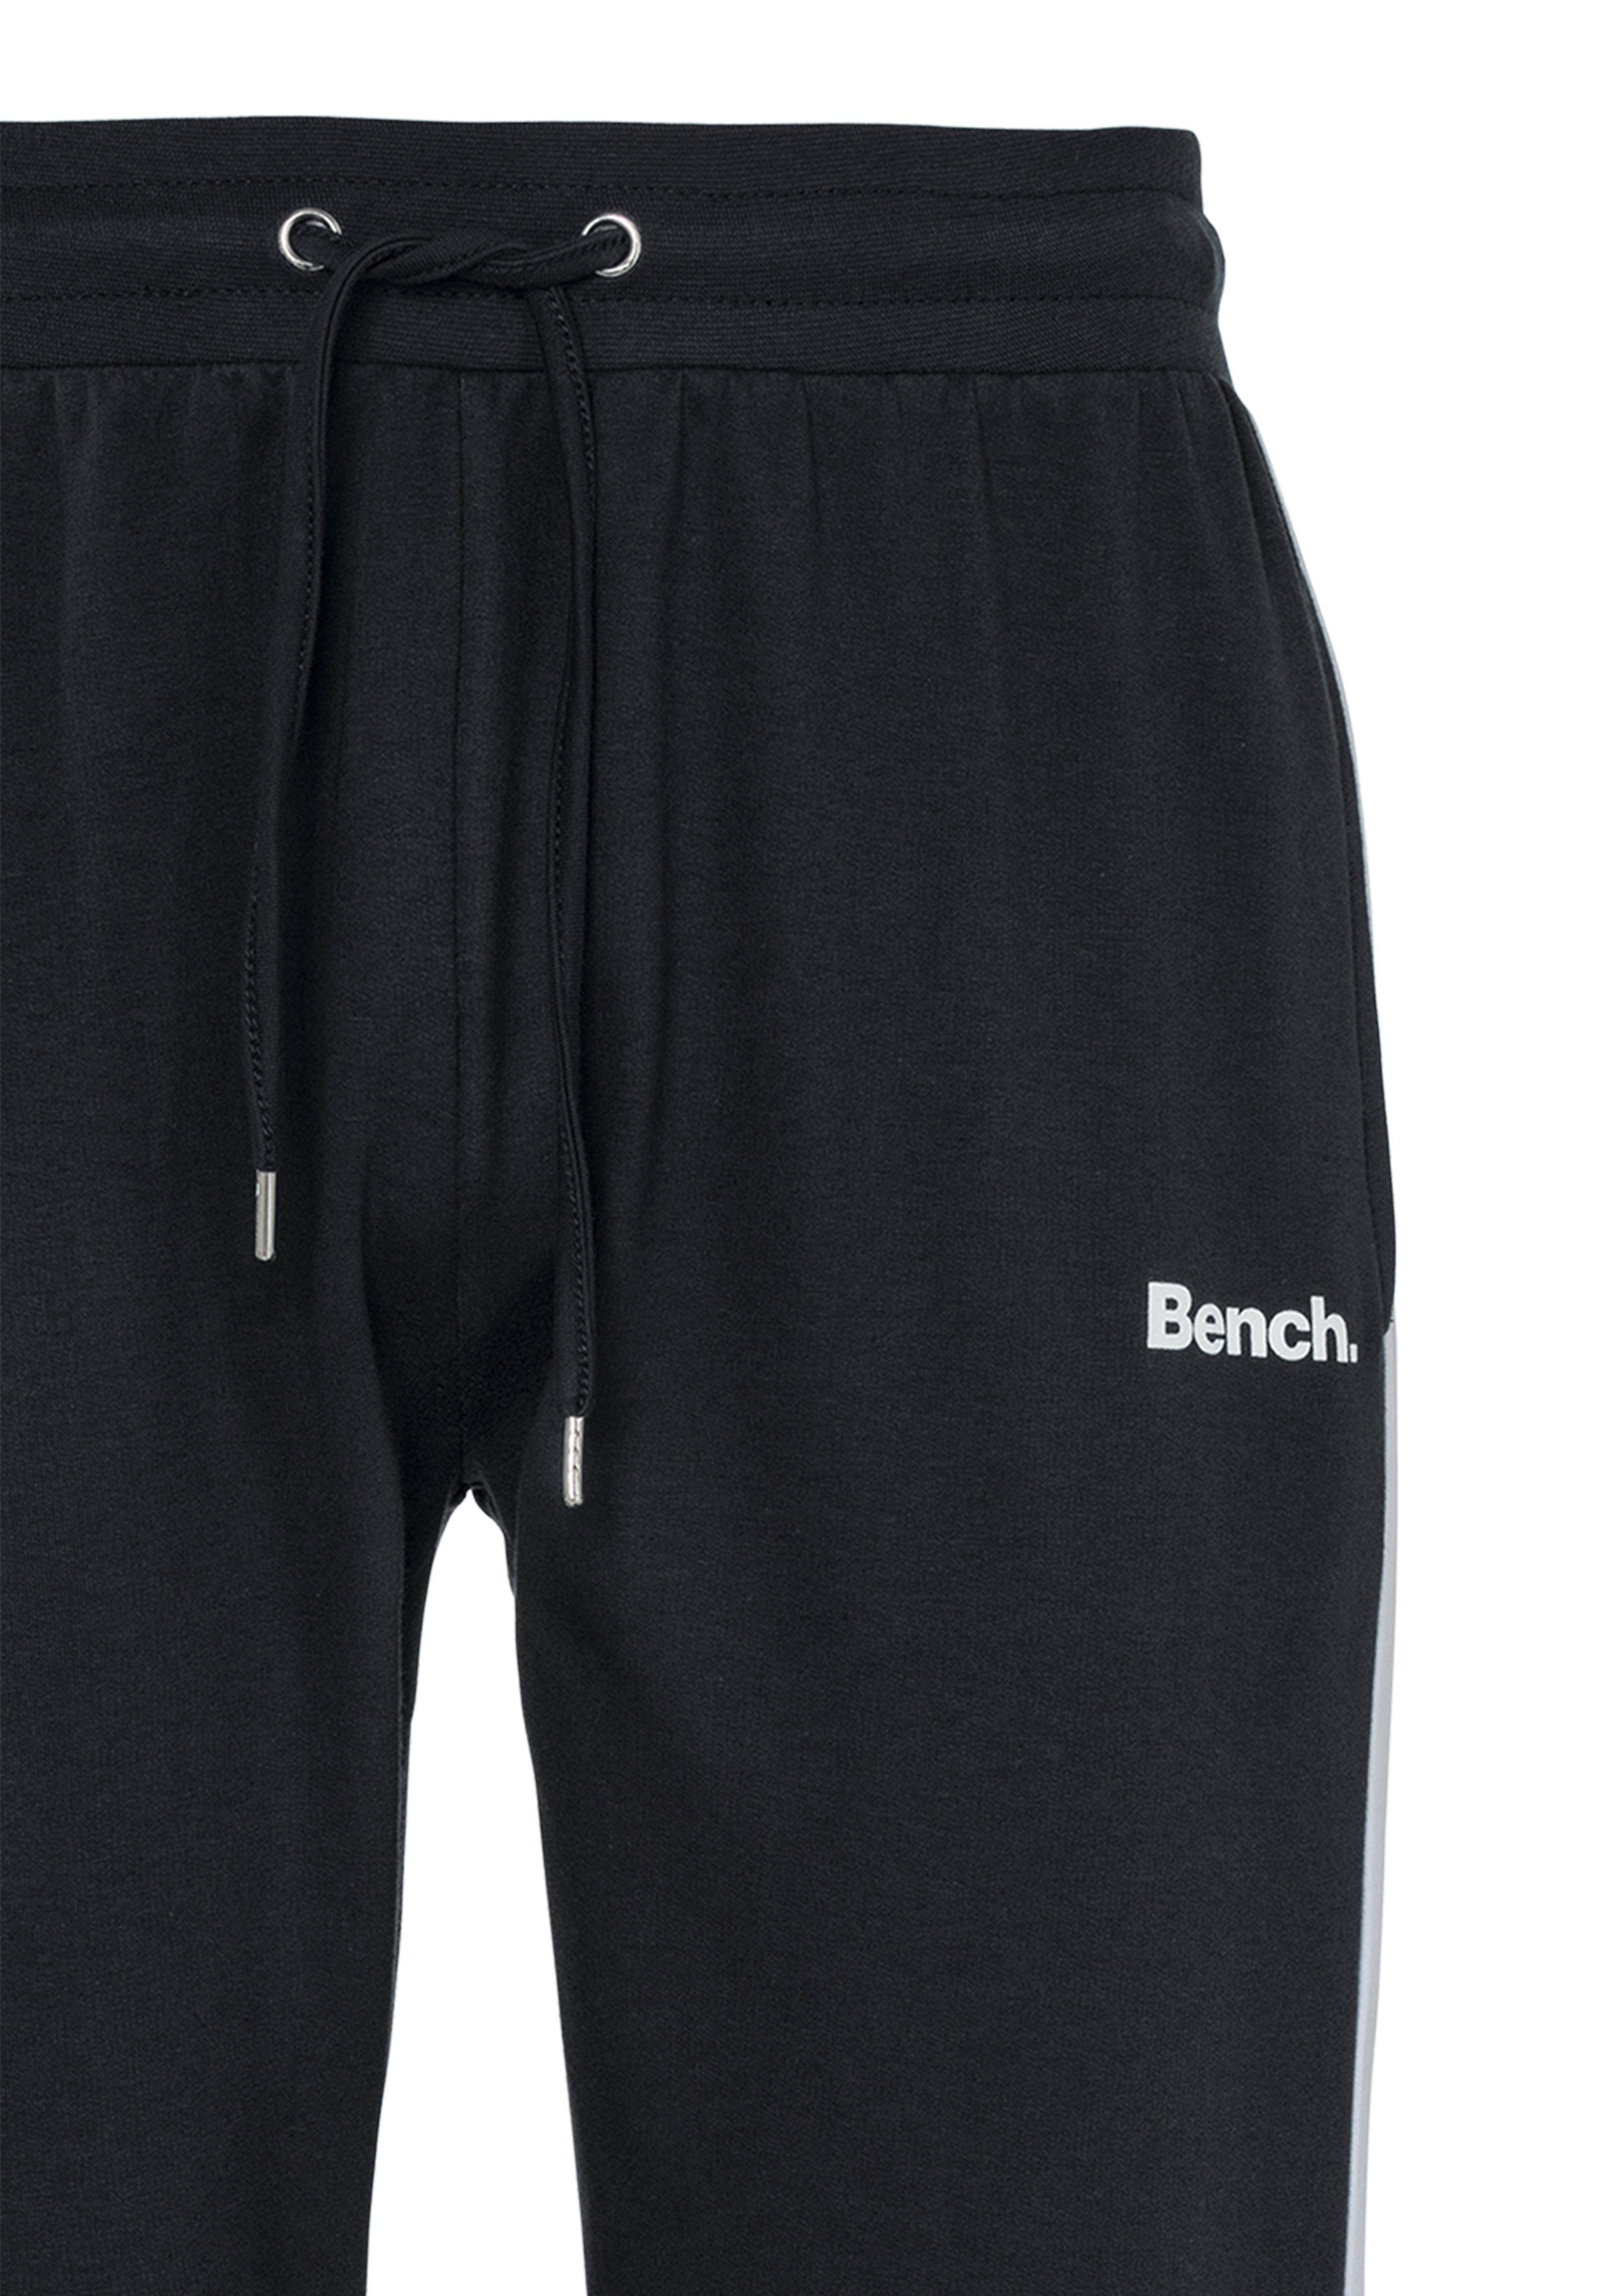 Sweathose mit Loungewear Beinabschluss Bündchen am Bench. schwarz